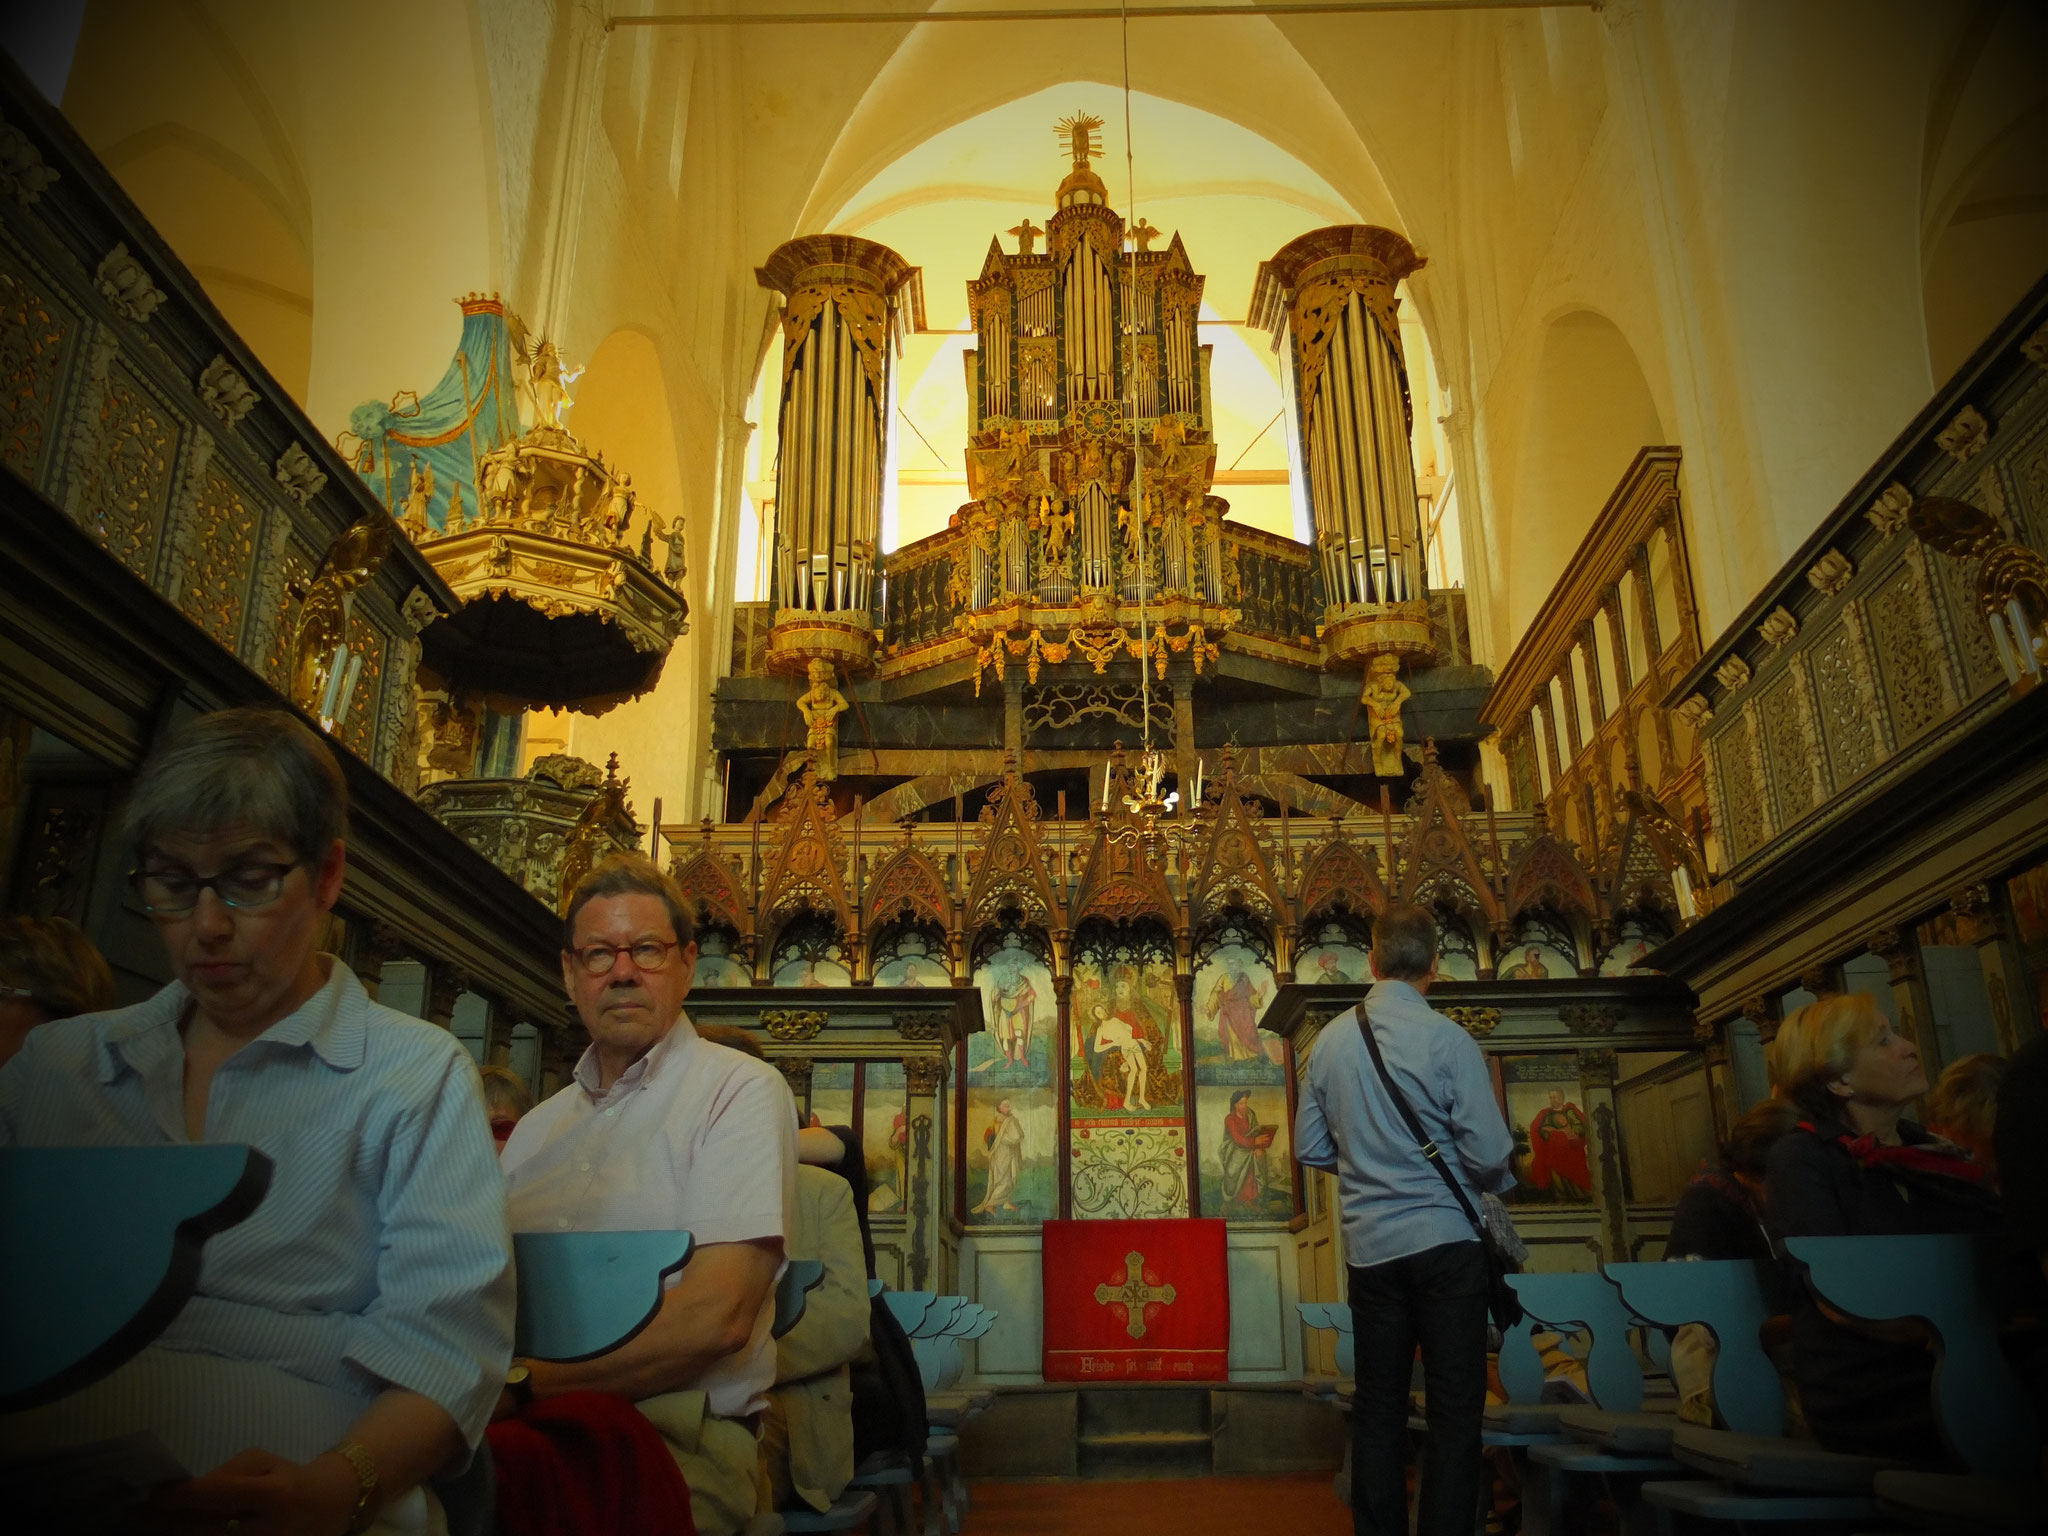 Die Geschichte der Historischen Klosterorgel reicht bis ins Jahr 1573 zurück. Die Gesellschaft der Freunde des Klosters Preetz e.V. ermöglichte um die Jahrtausendwende eine Restauration der Orgel bei Marcussen & Søn aus Aabenraa.